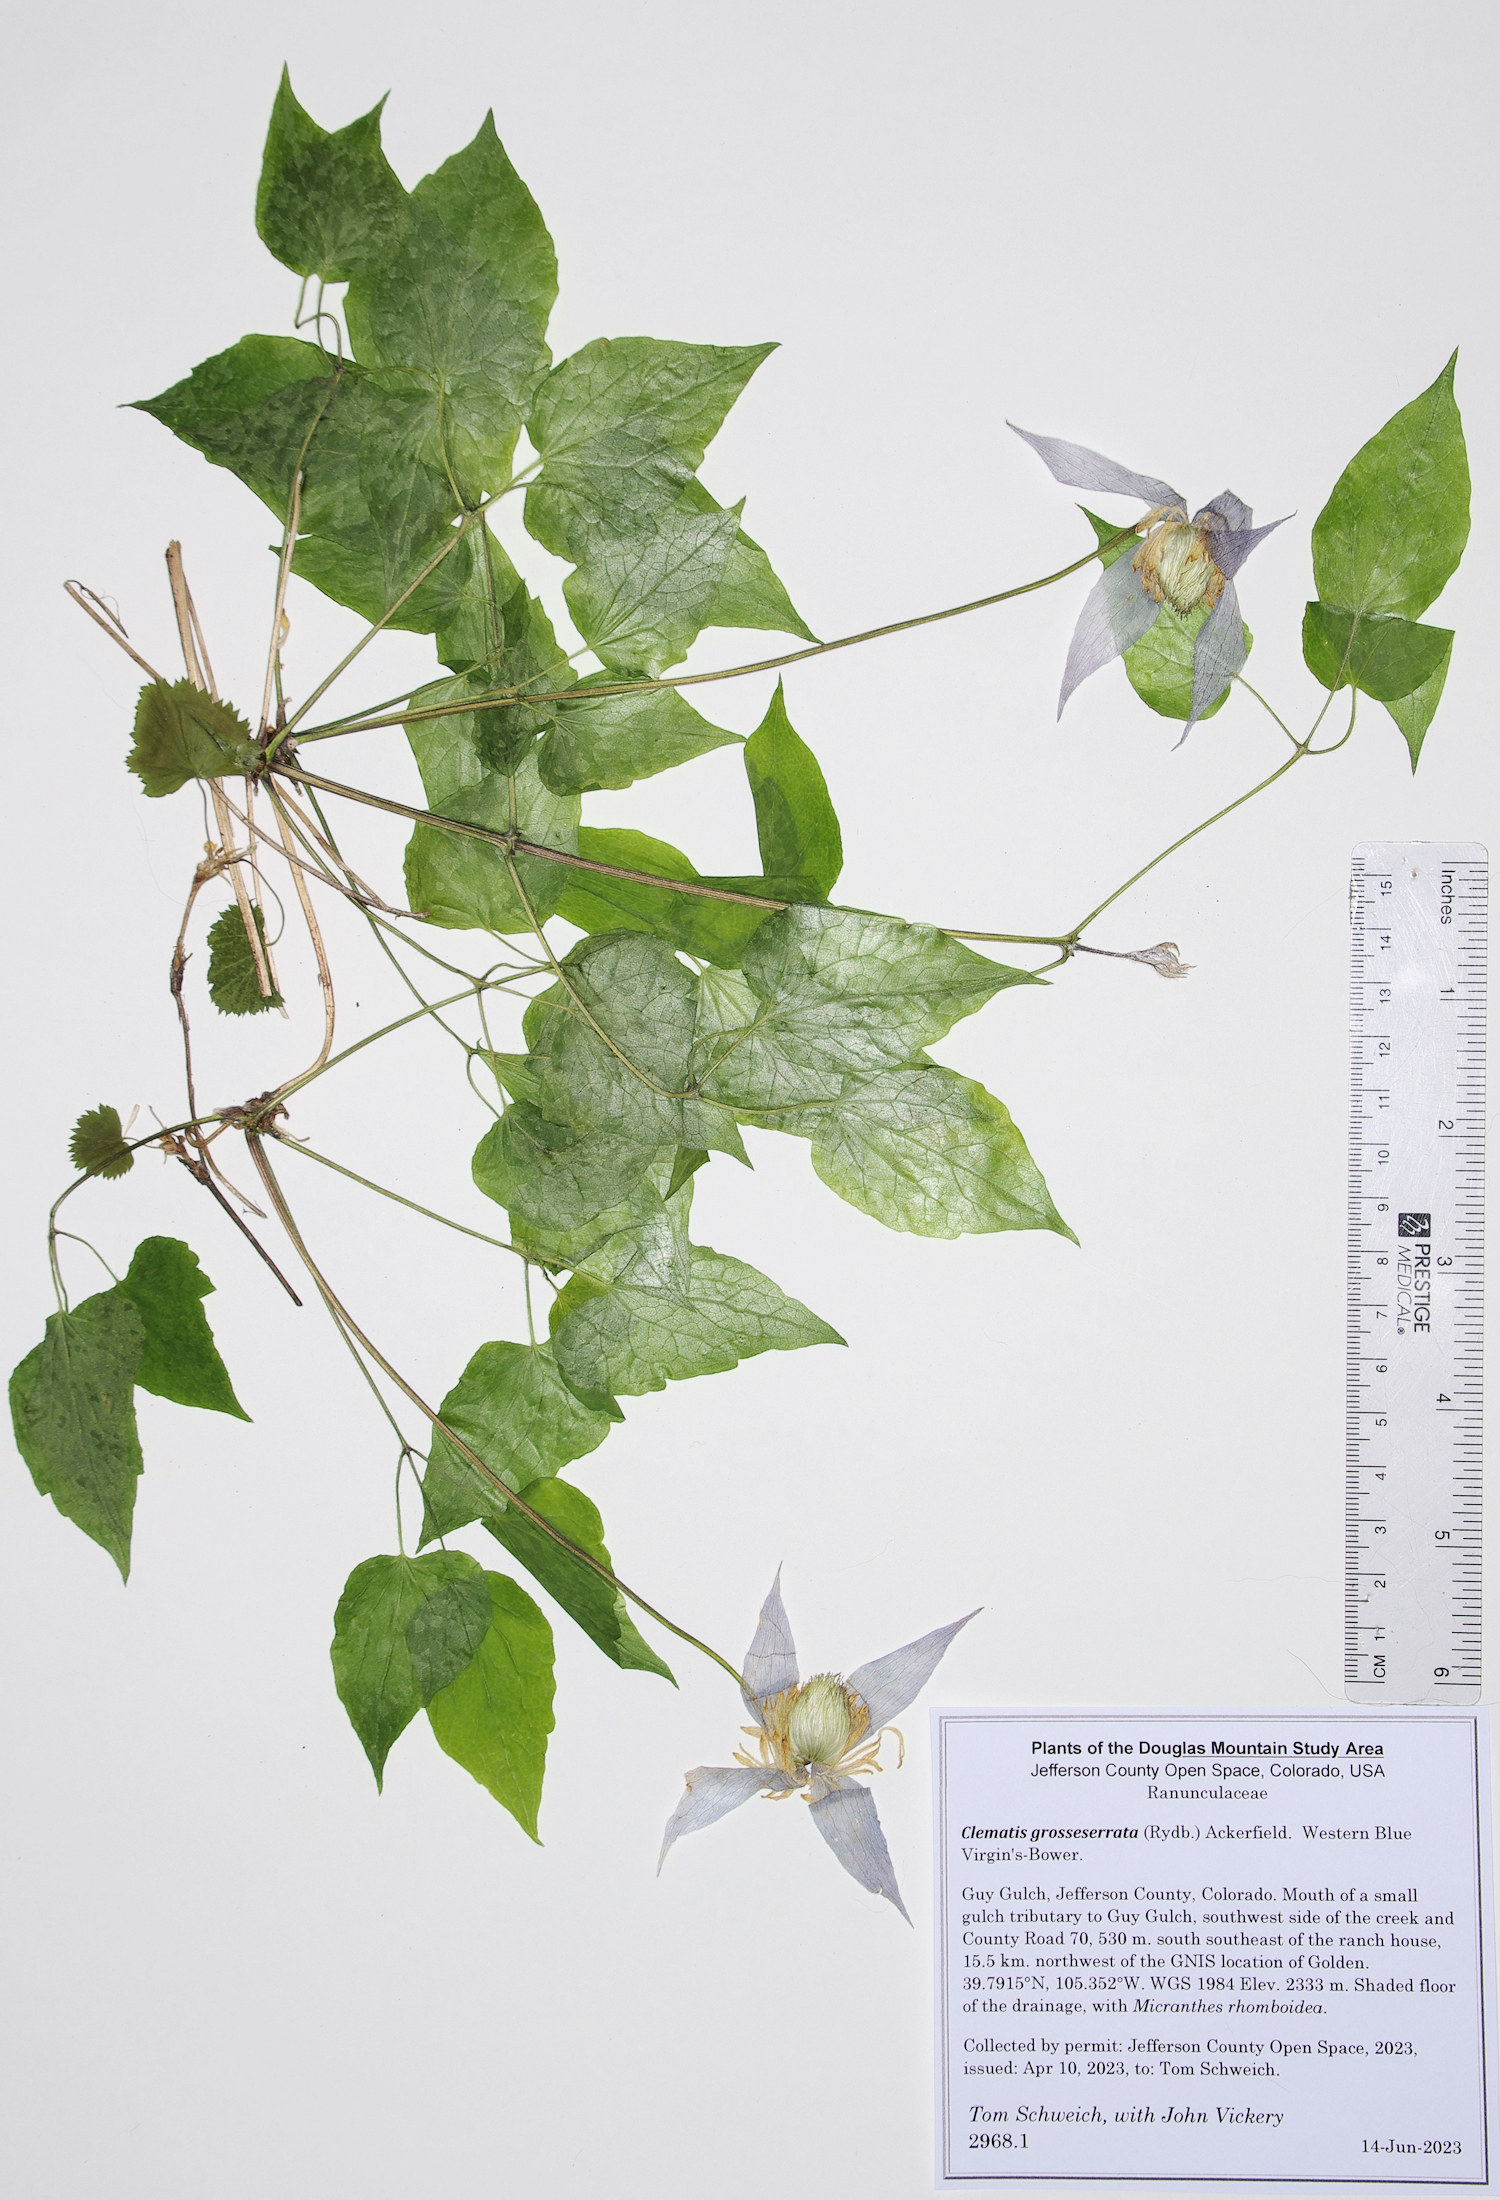 Ranunculaceae Clematis grosseserrata